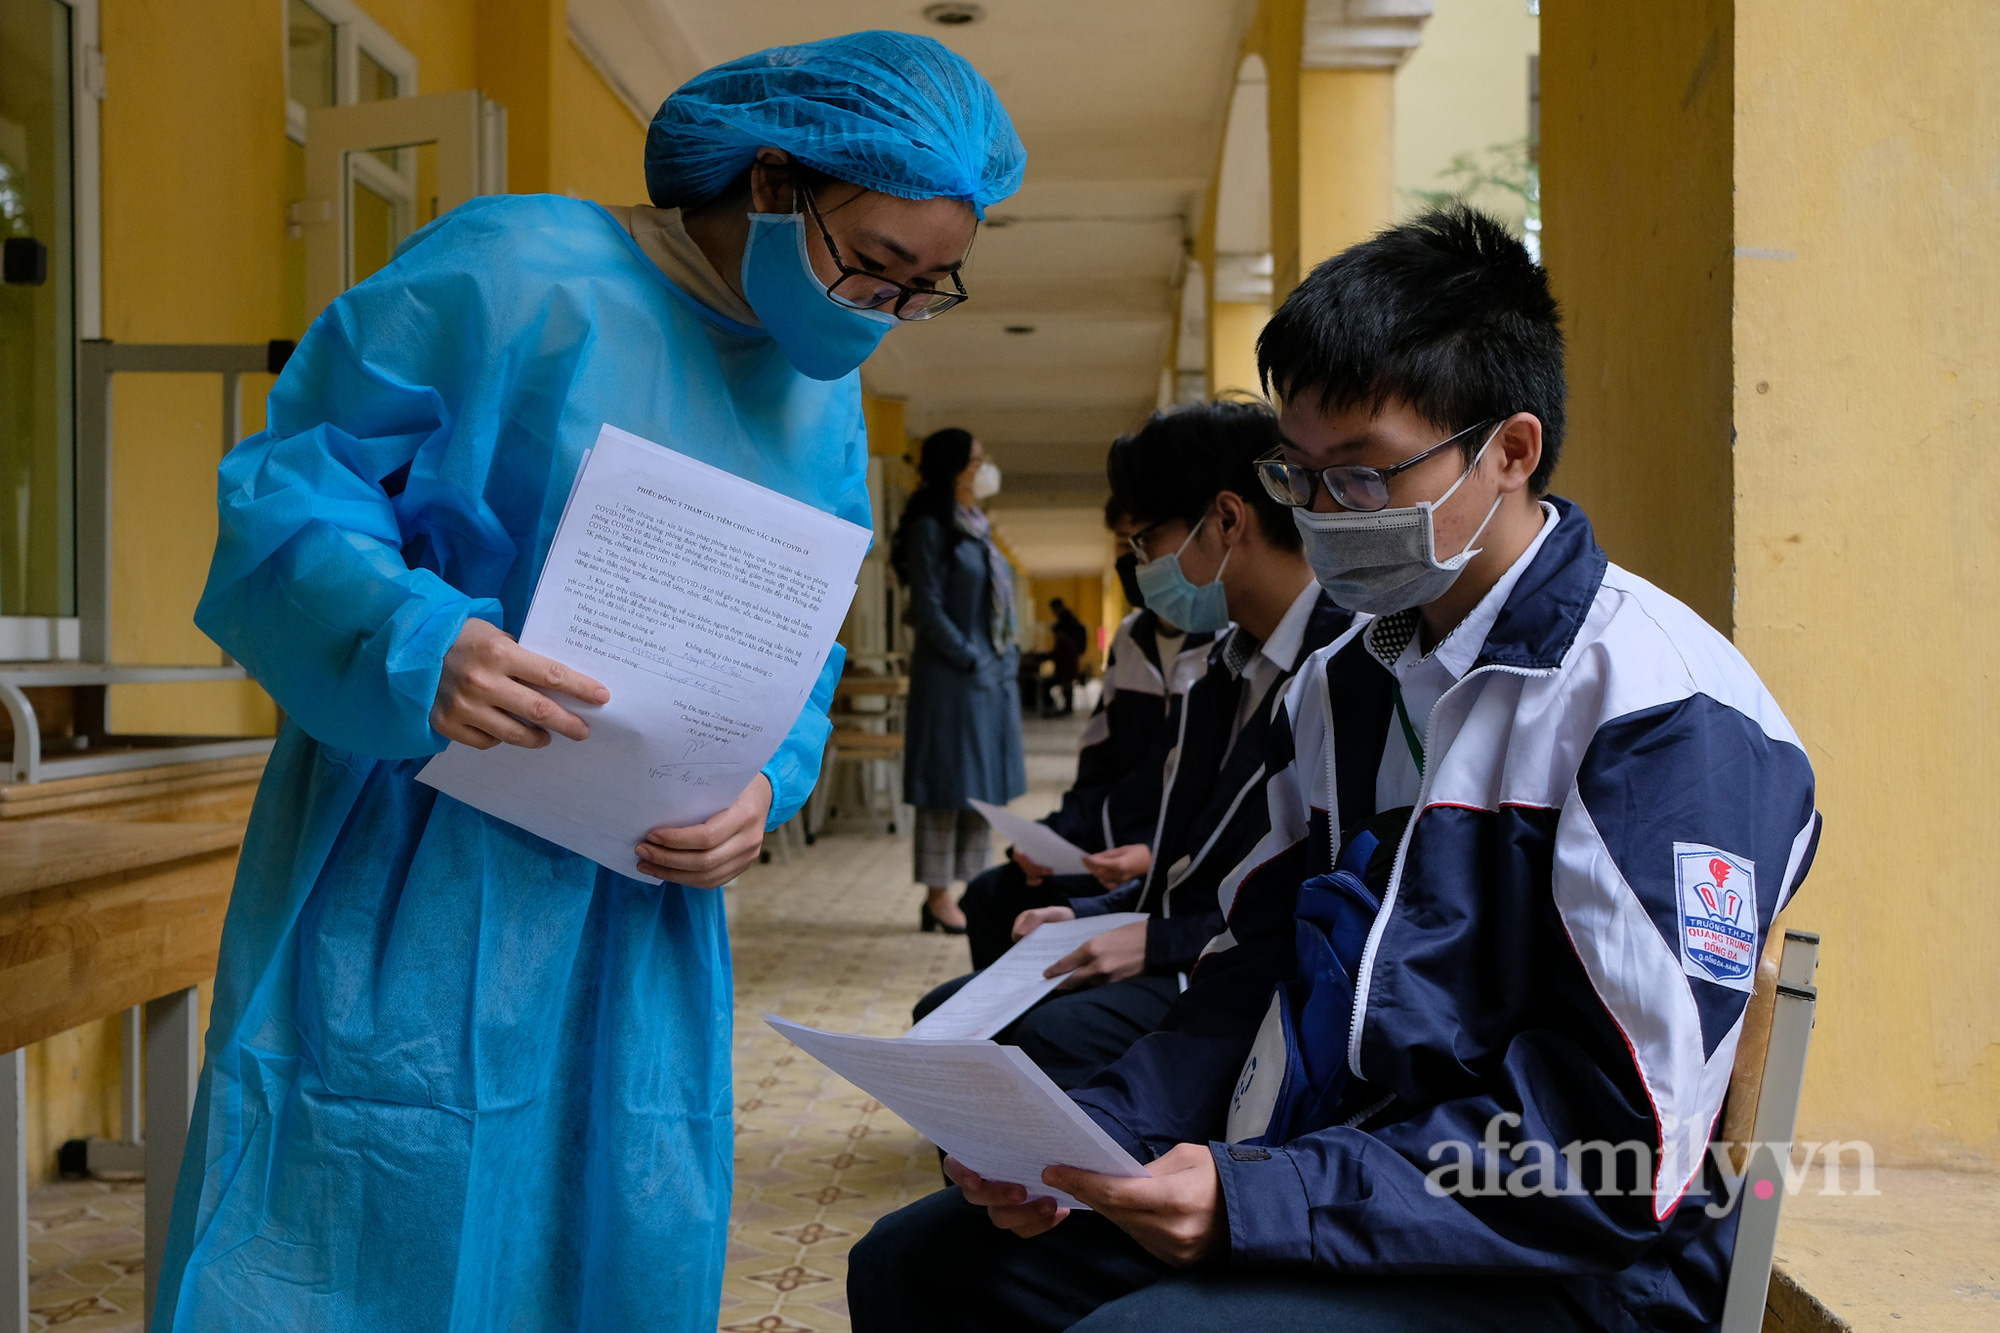 Xúc động người mẹ tật nguyền chống nạng đến trường giám hộ cho con ngày đầu tiên học sinh Hà Nội được tiêm vaccine COVID-19 - Ảnh 8.